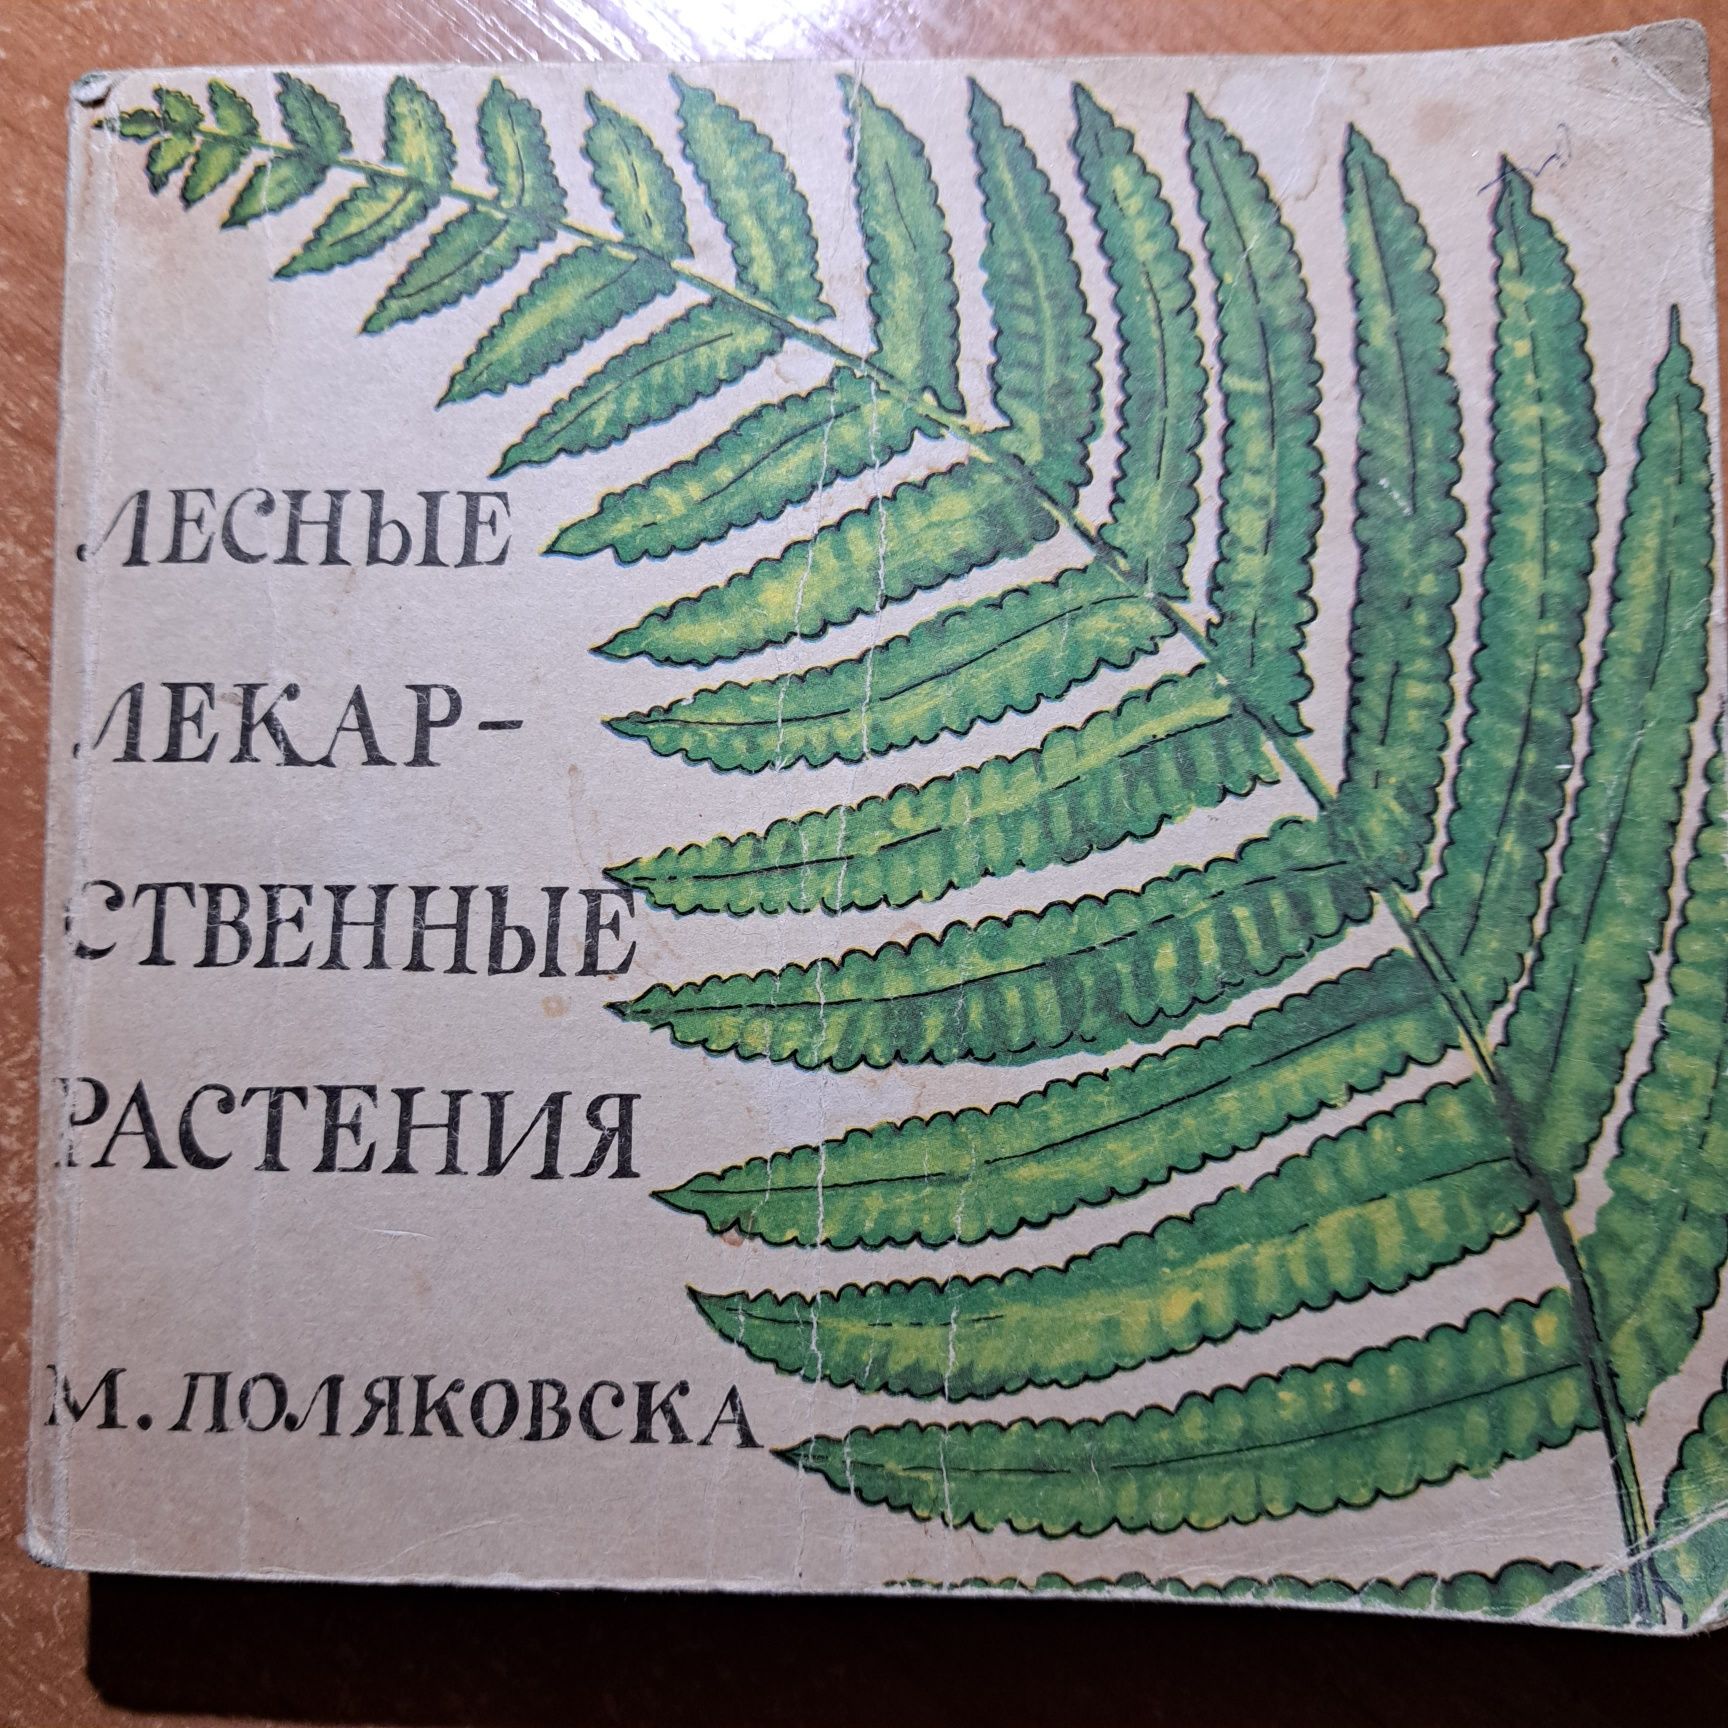 Лекарственные растения. М.Поляковска. Варшава, 1986, 250 стр.